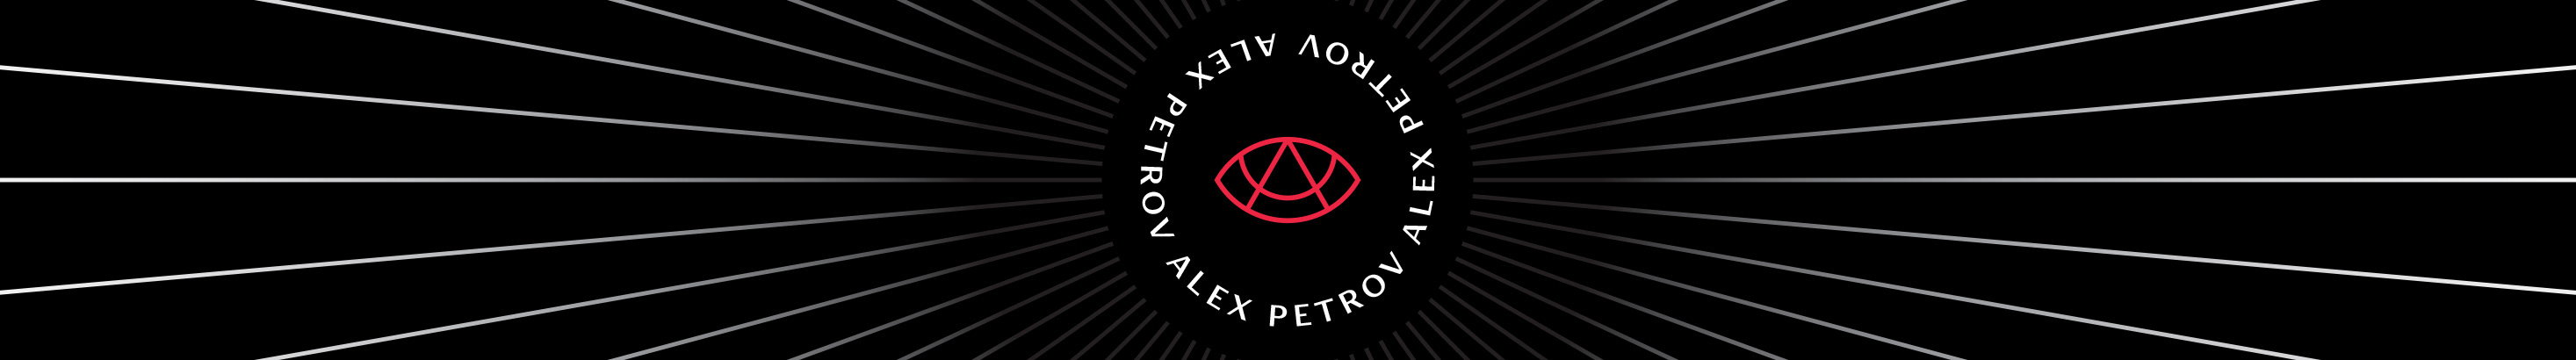 Alex Petrovs profilbanner